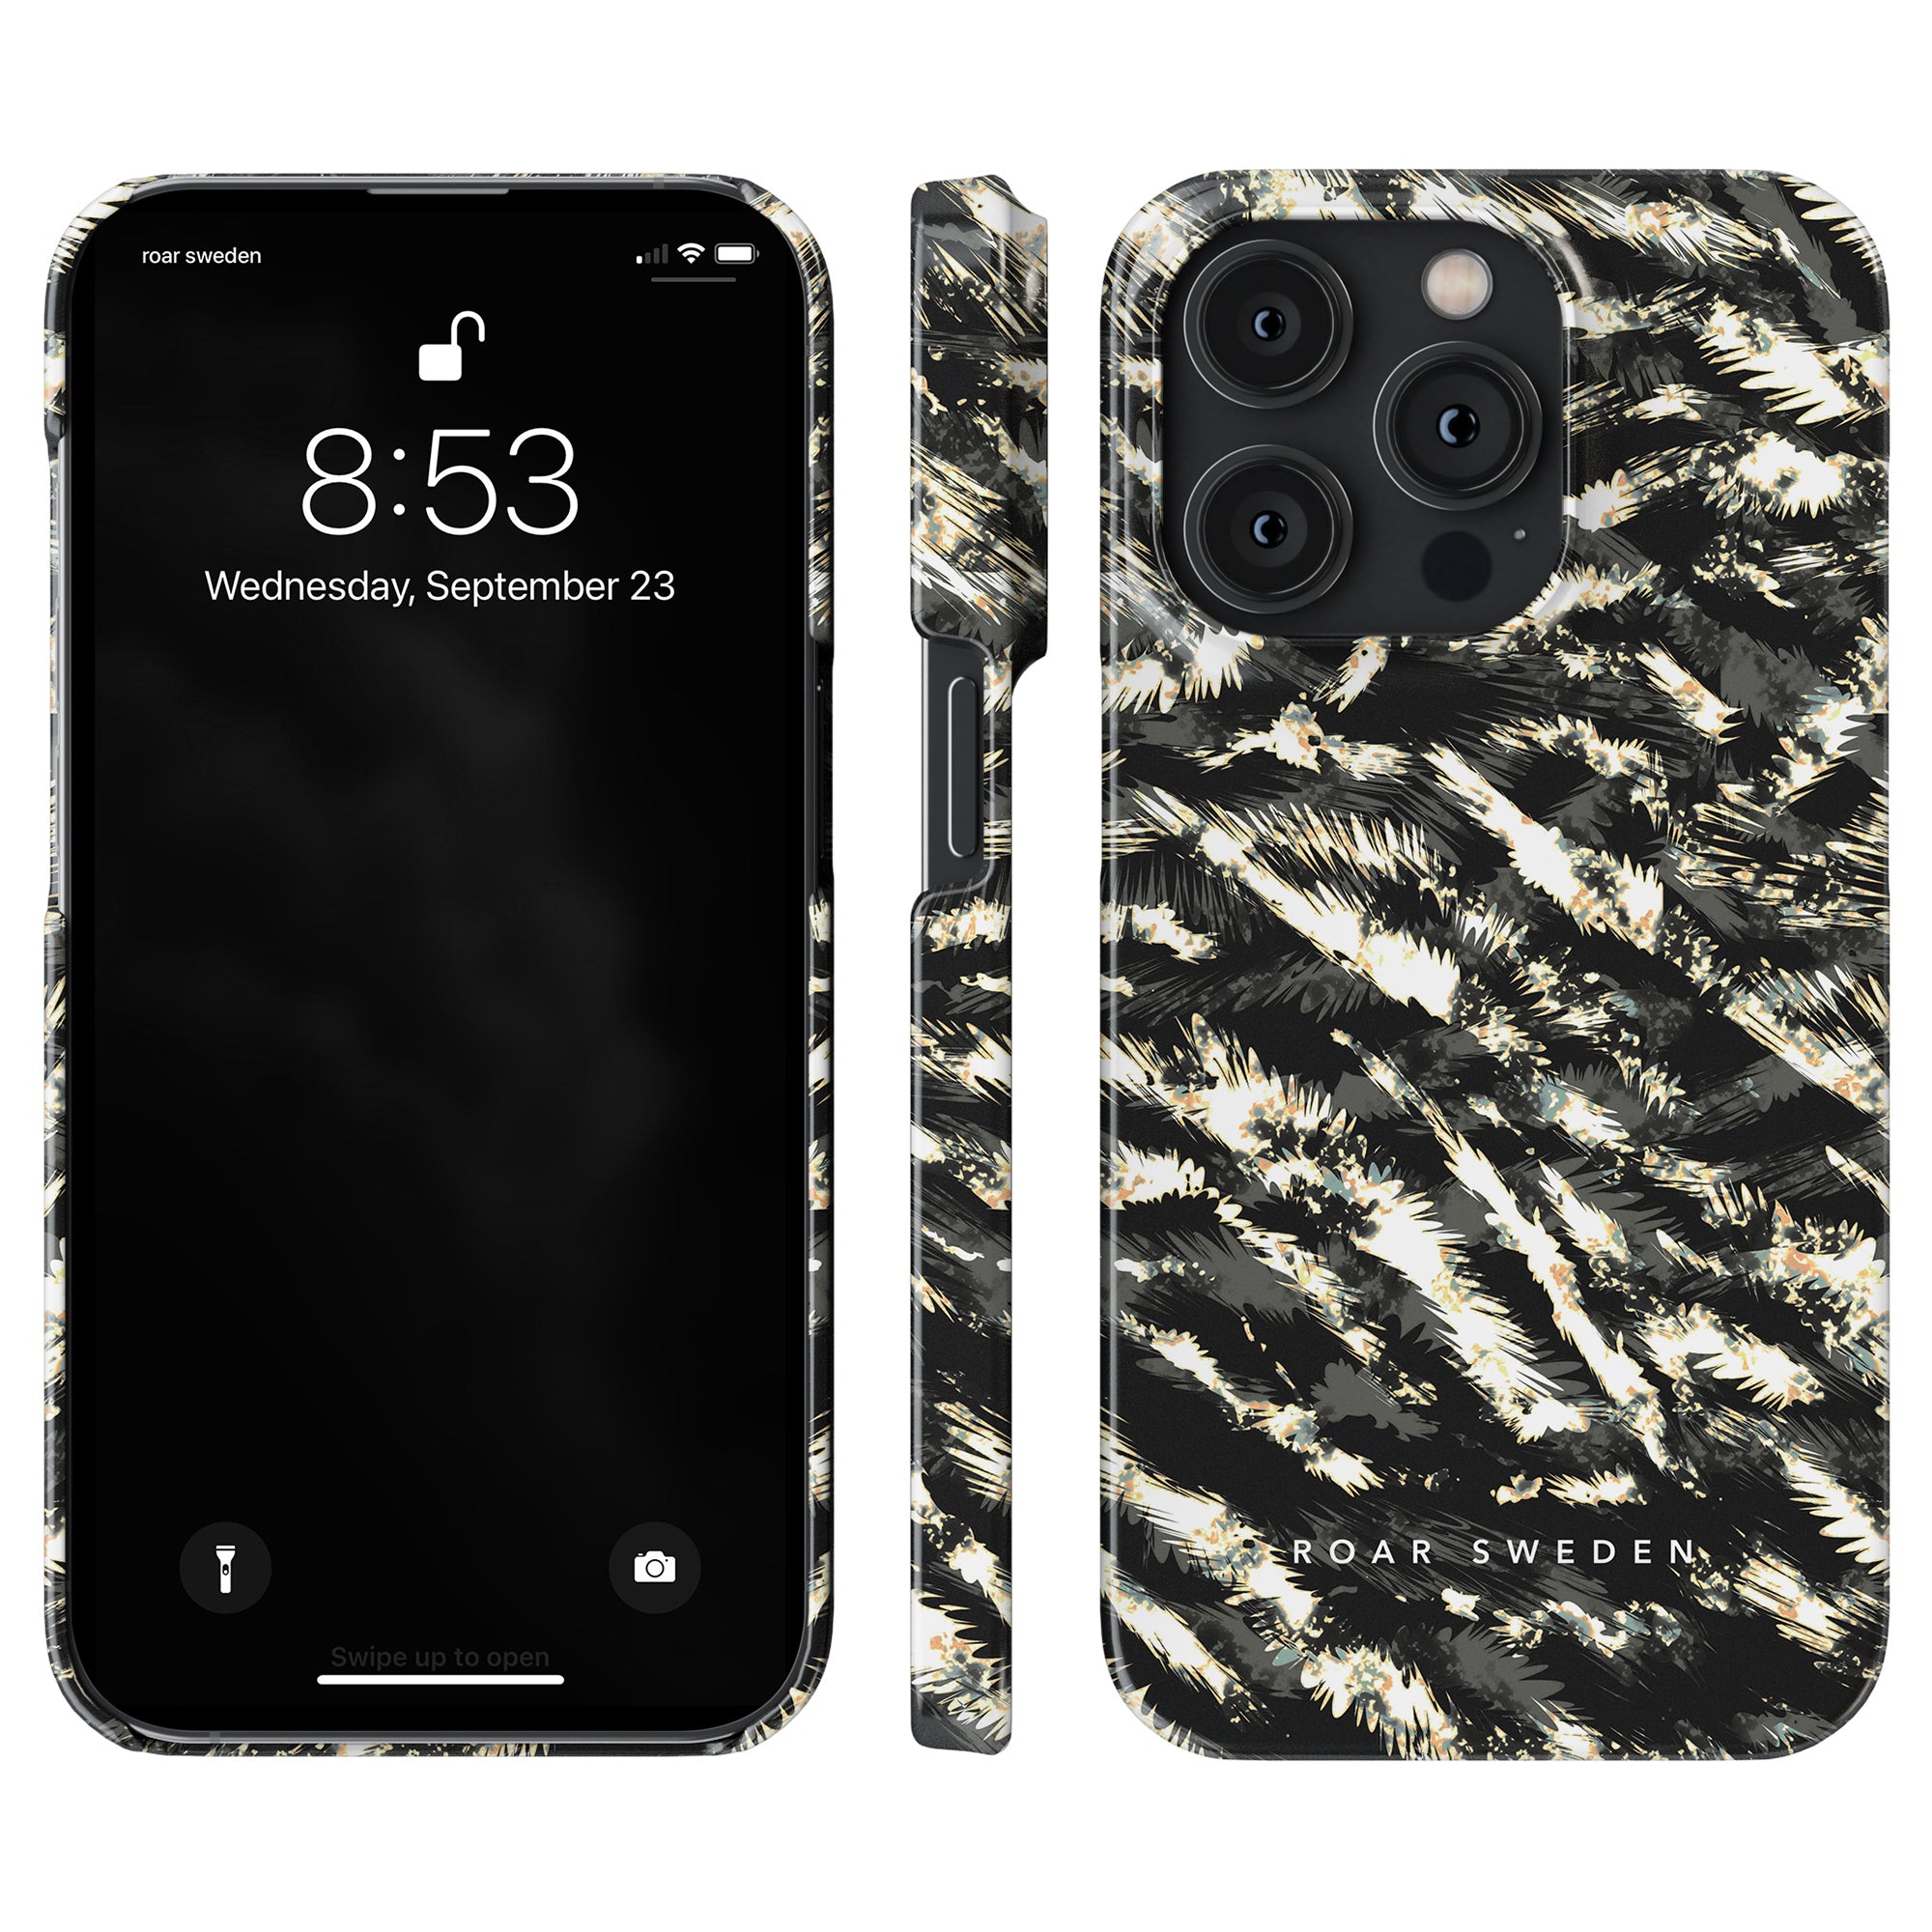 Beskrivning: Ett mobilskal till iPhone 11 från Dazzle - Slim case med ett mönster i svart och guld.